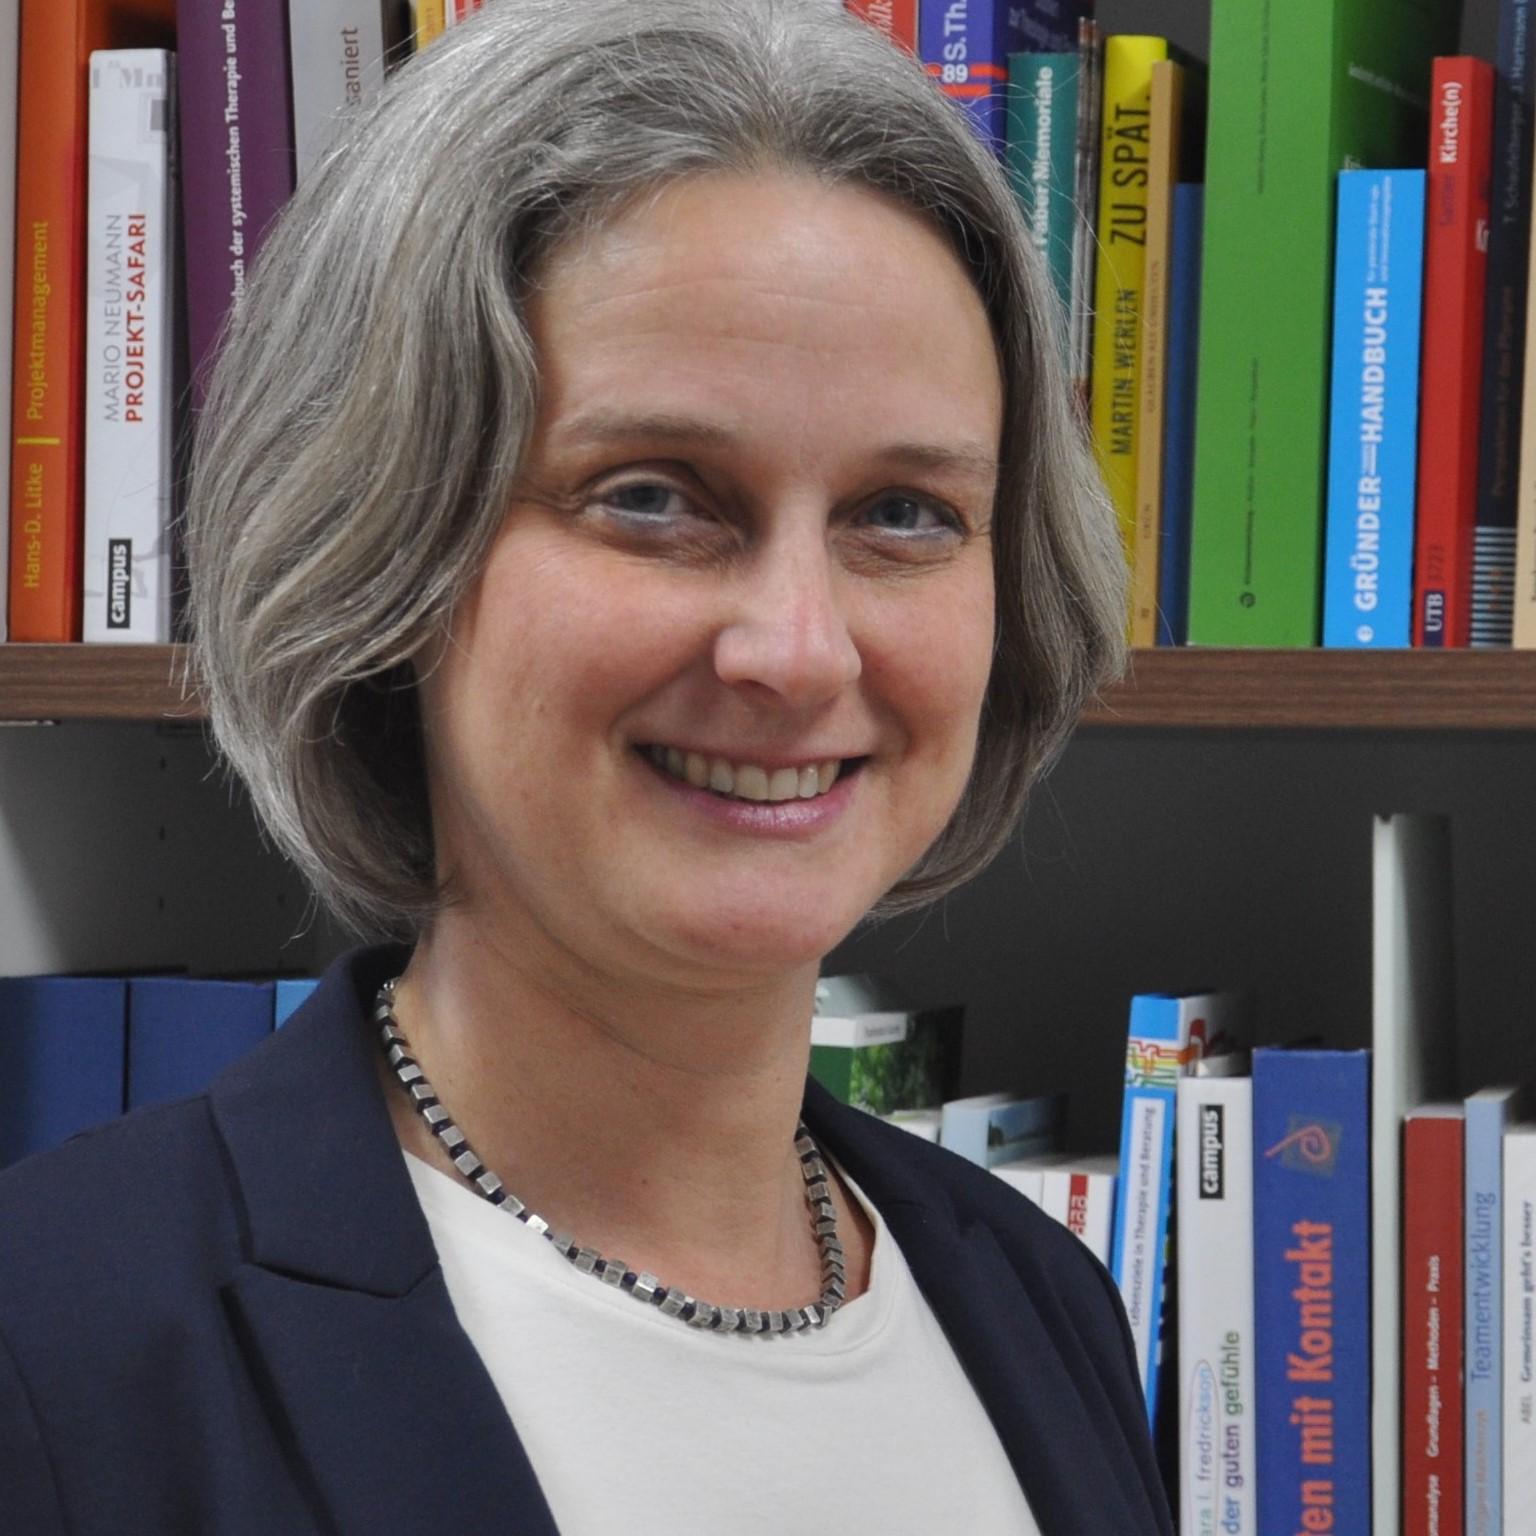 Dr. Ursula Stroth